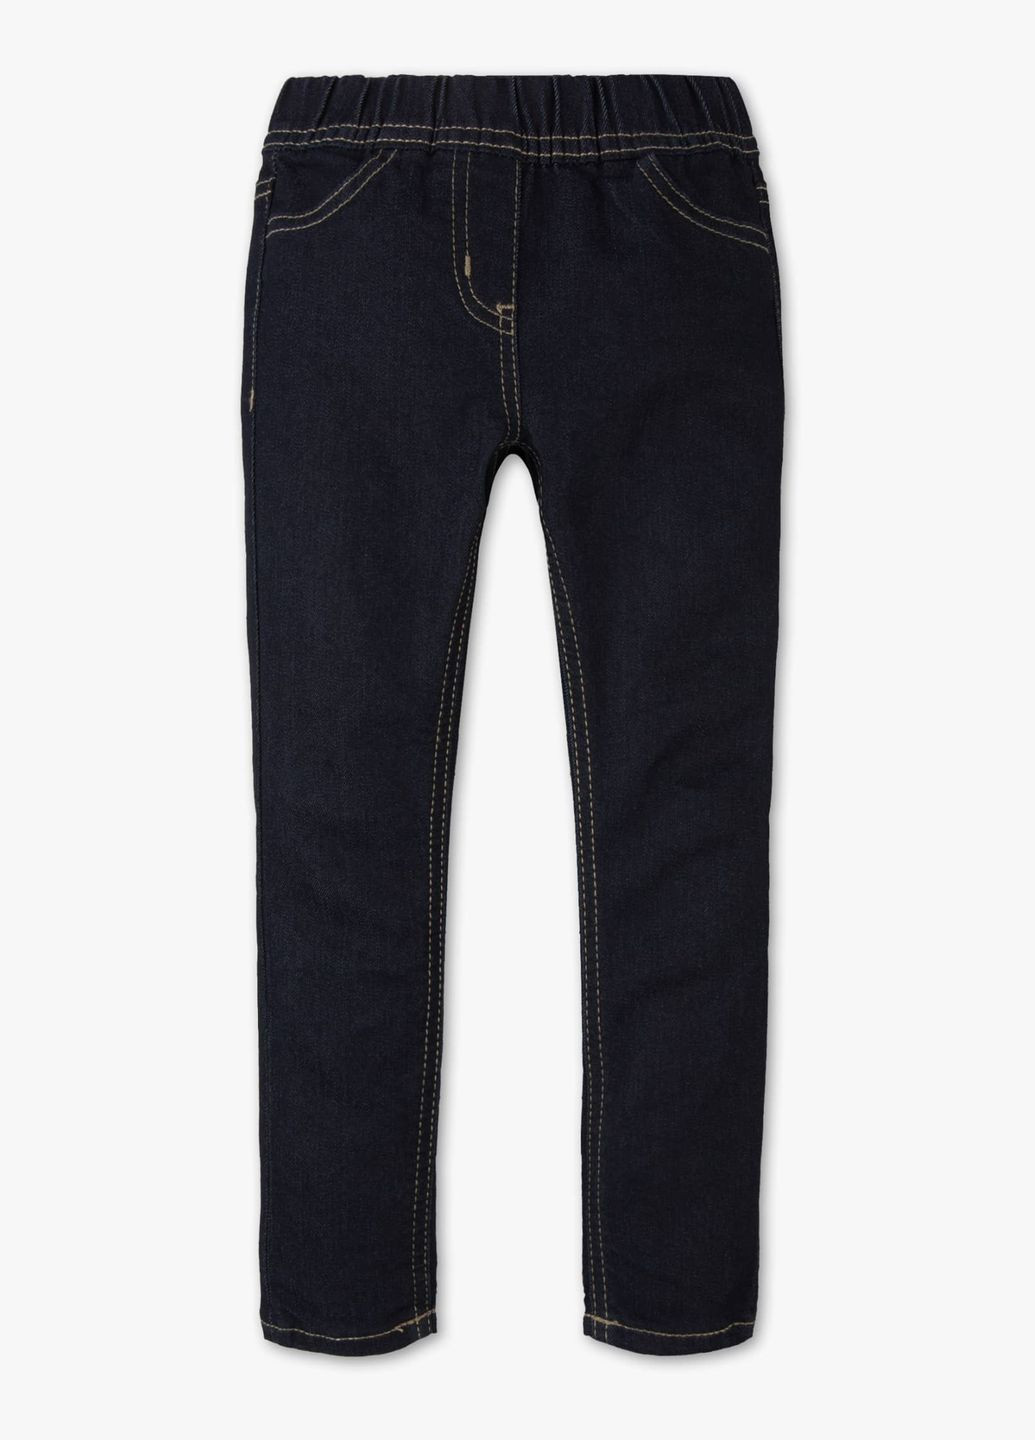 Темно-синие демисезонные джинсовые джеггинсы для девочки 110 размер 2000392 C&A